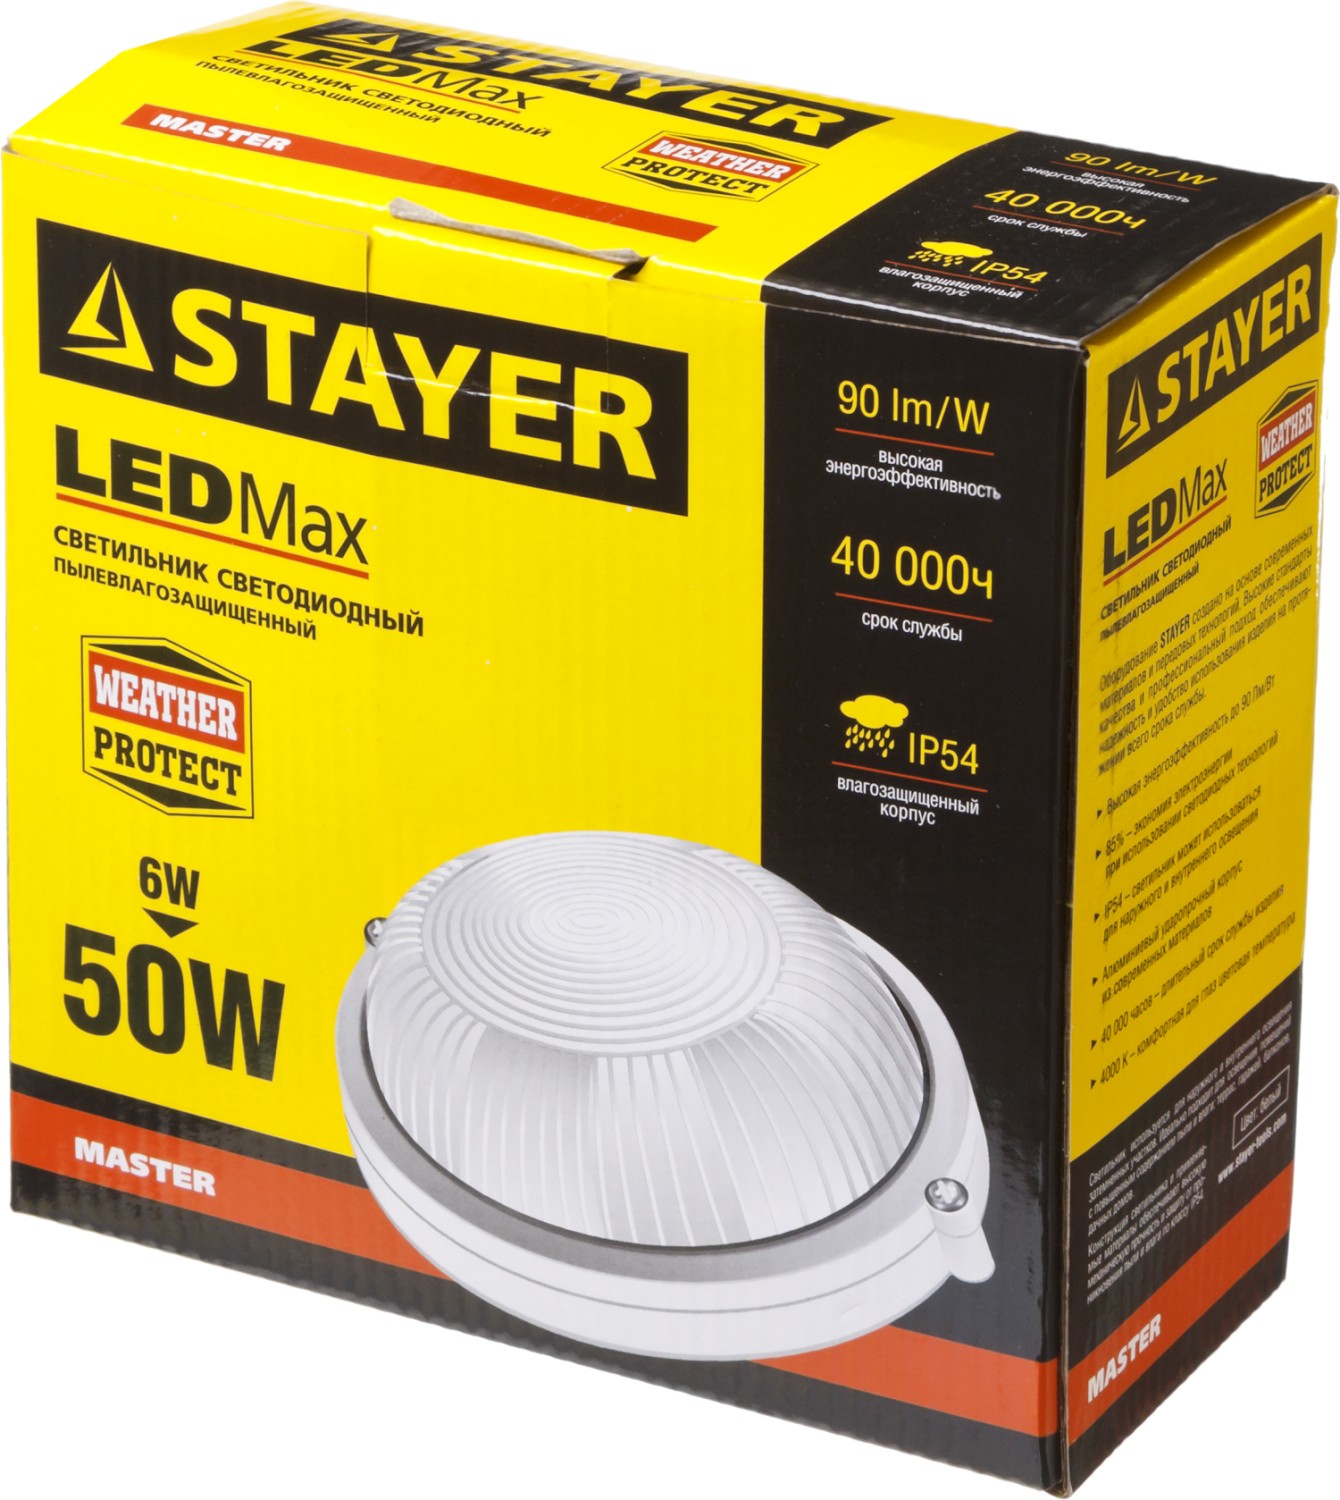 STAYER STARLight, 50 Вт, влагозащищенный светодиодный светильник (57360-50-W)